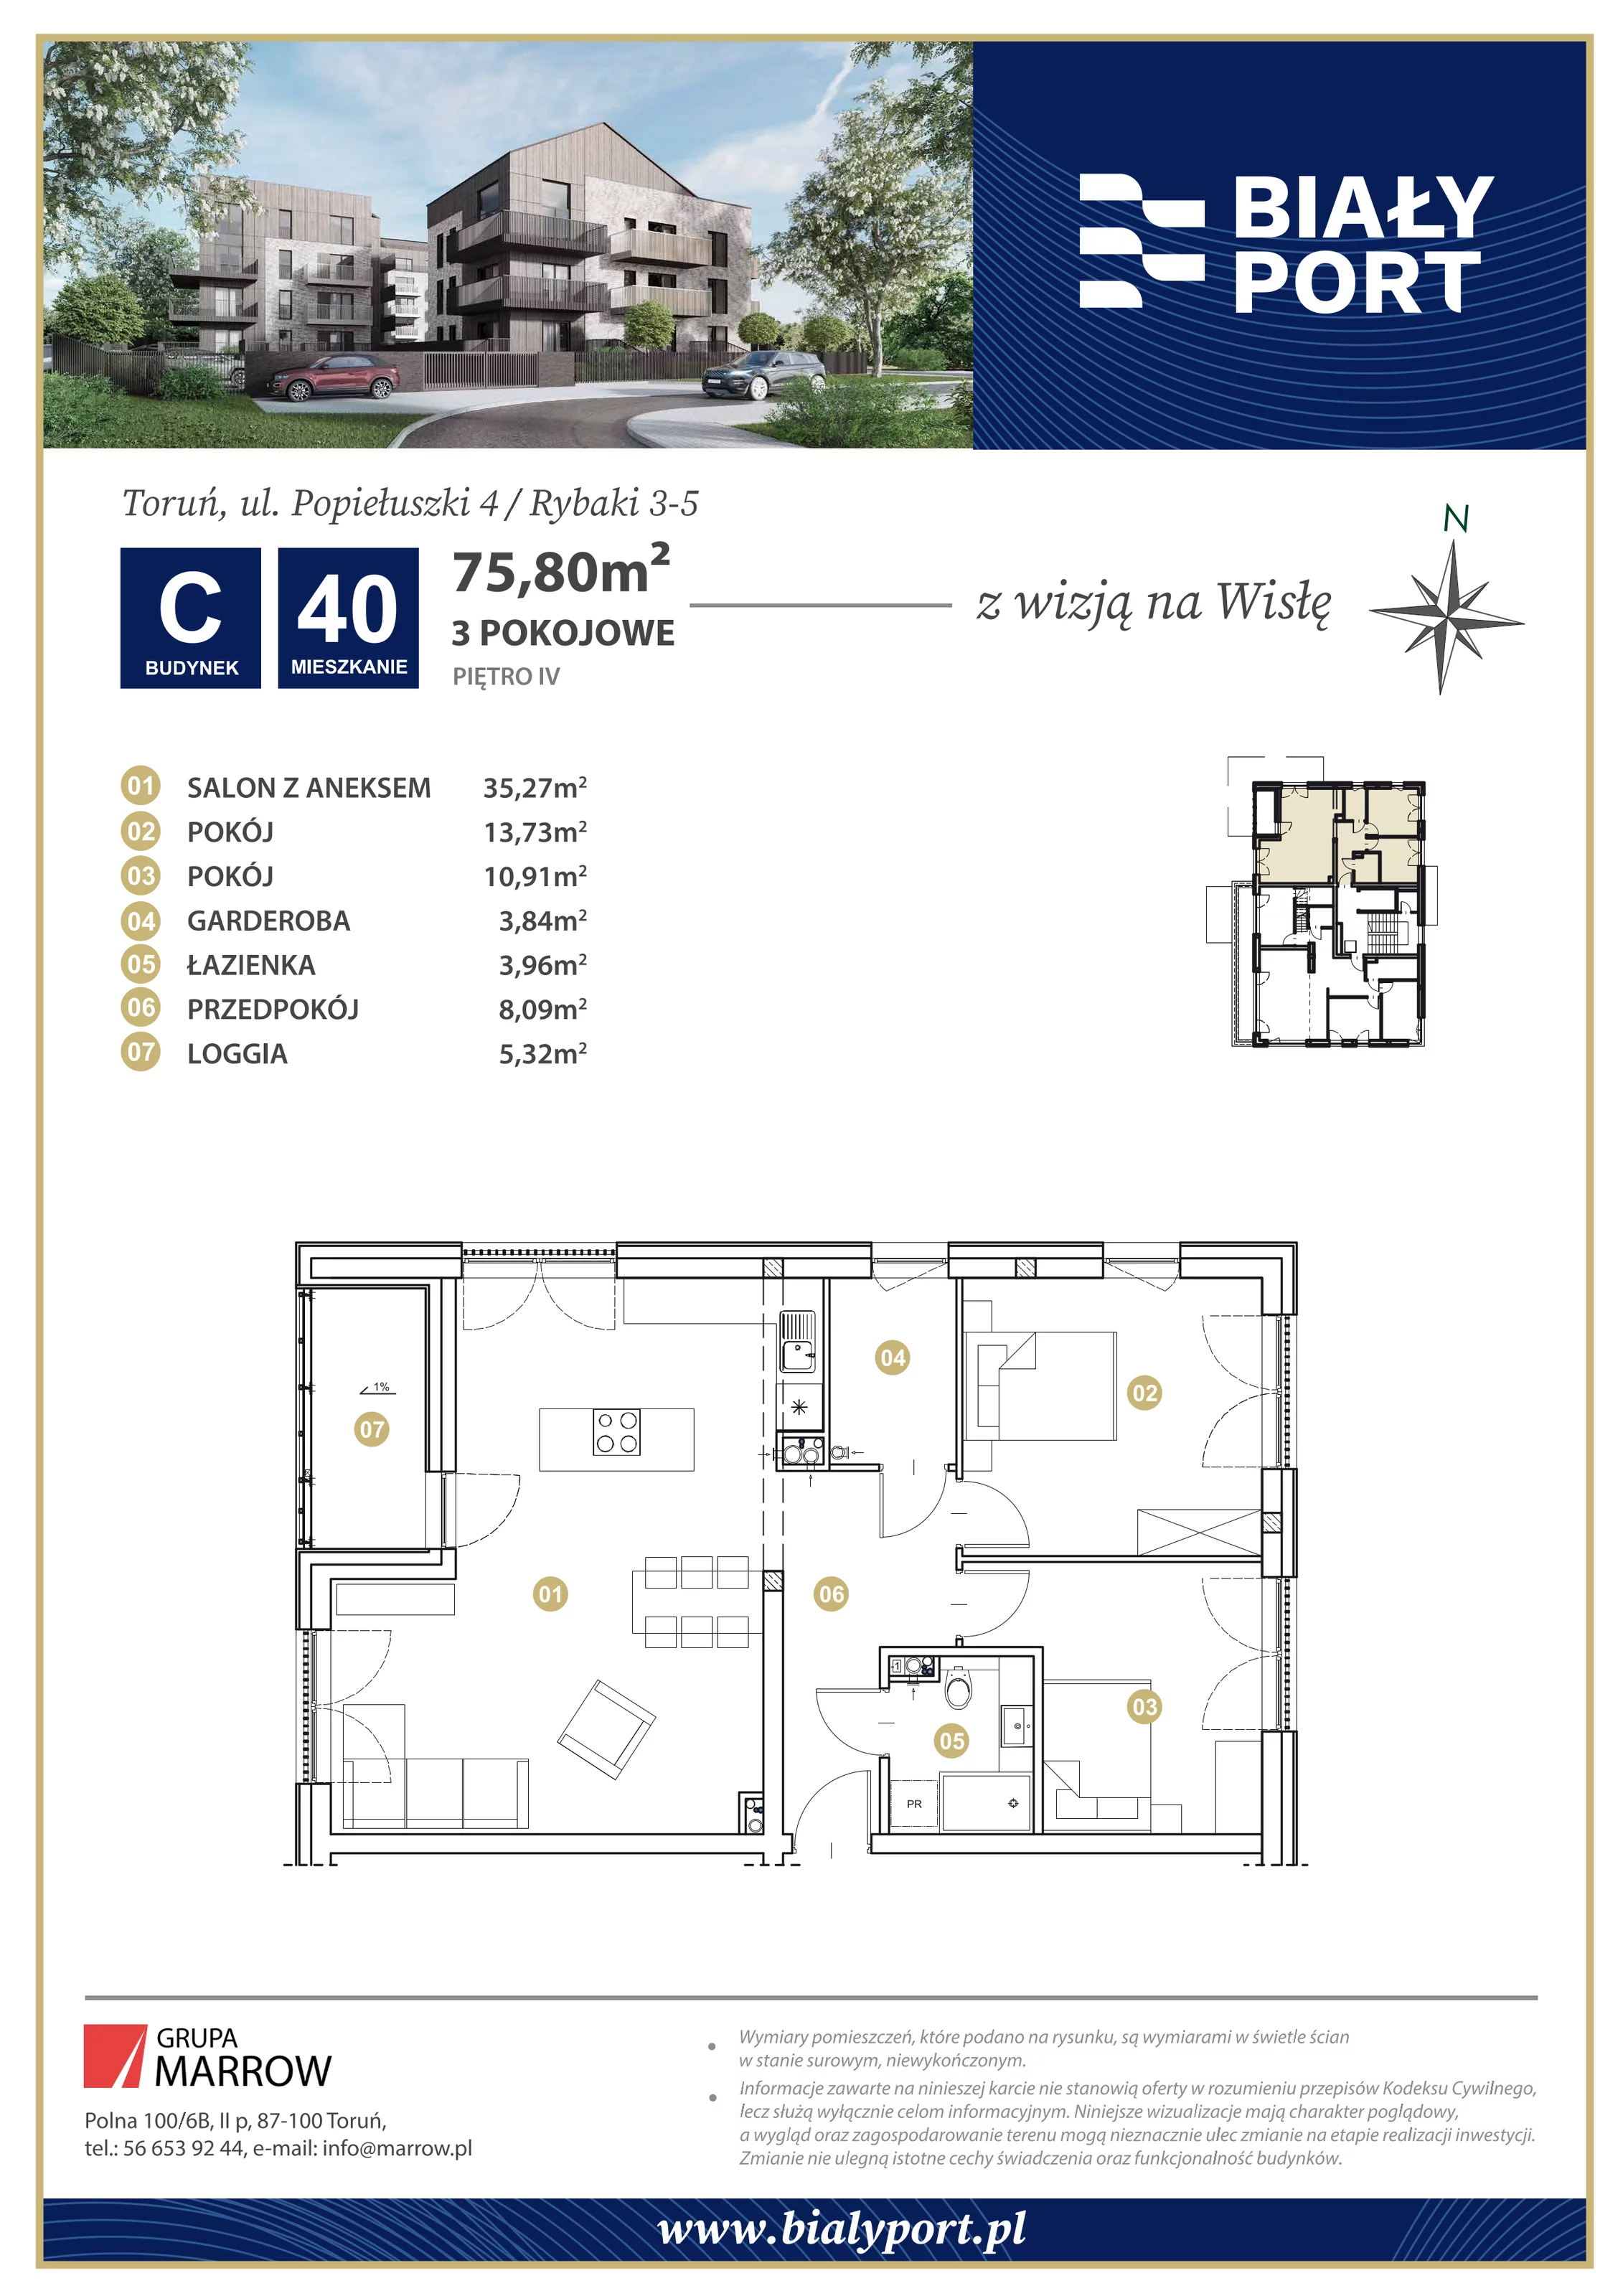 Mieszkanie 75,80 m², piętro 4, oferta nr 40, Biały Port, Toruń, Rybaki, ul. Popiełuszki 4